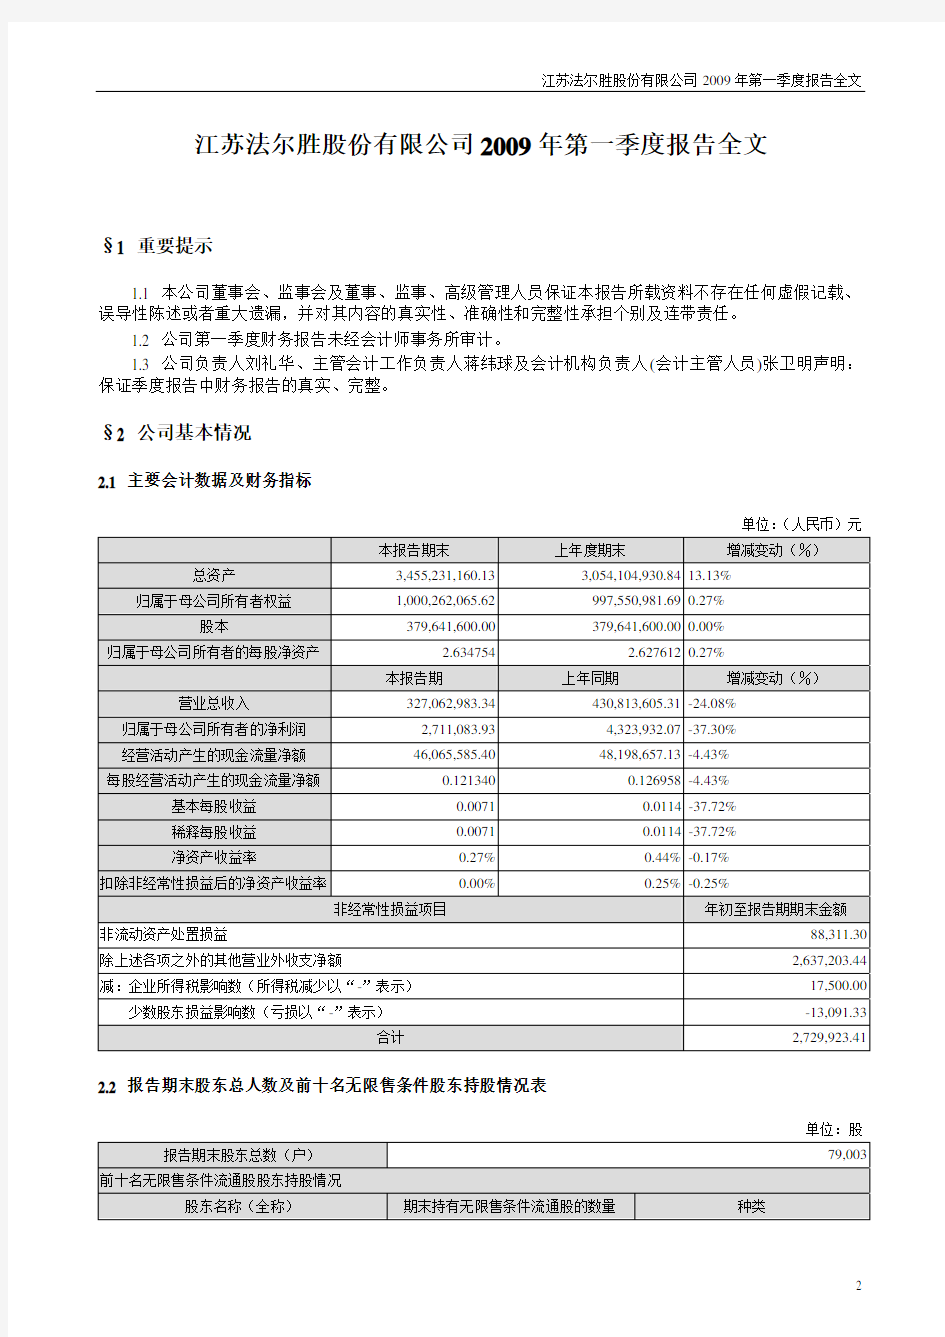 1江苏法尔胜股份有限公司2009年第一季度报告全文